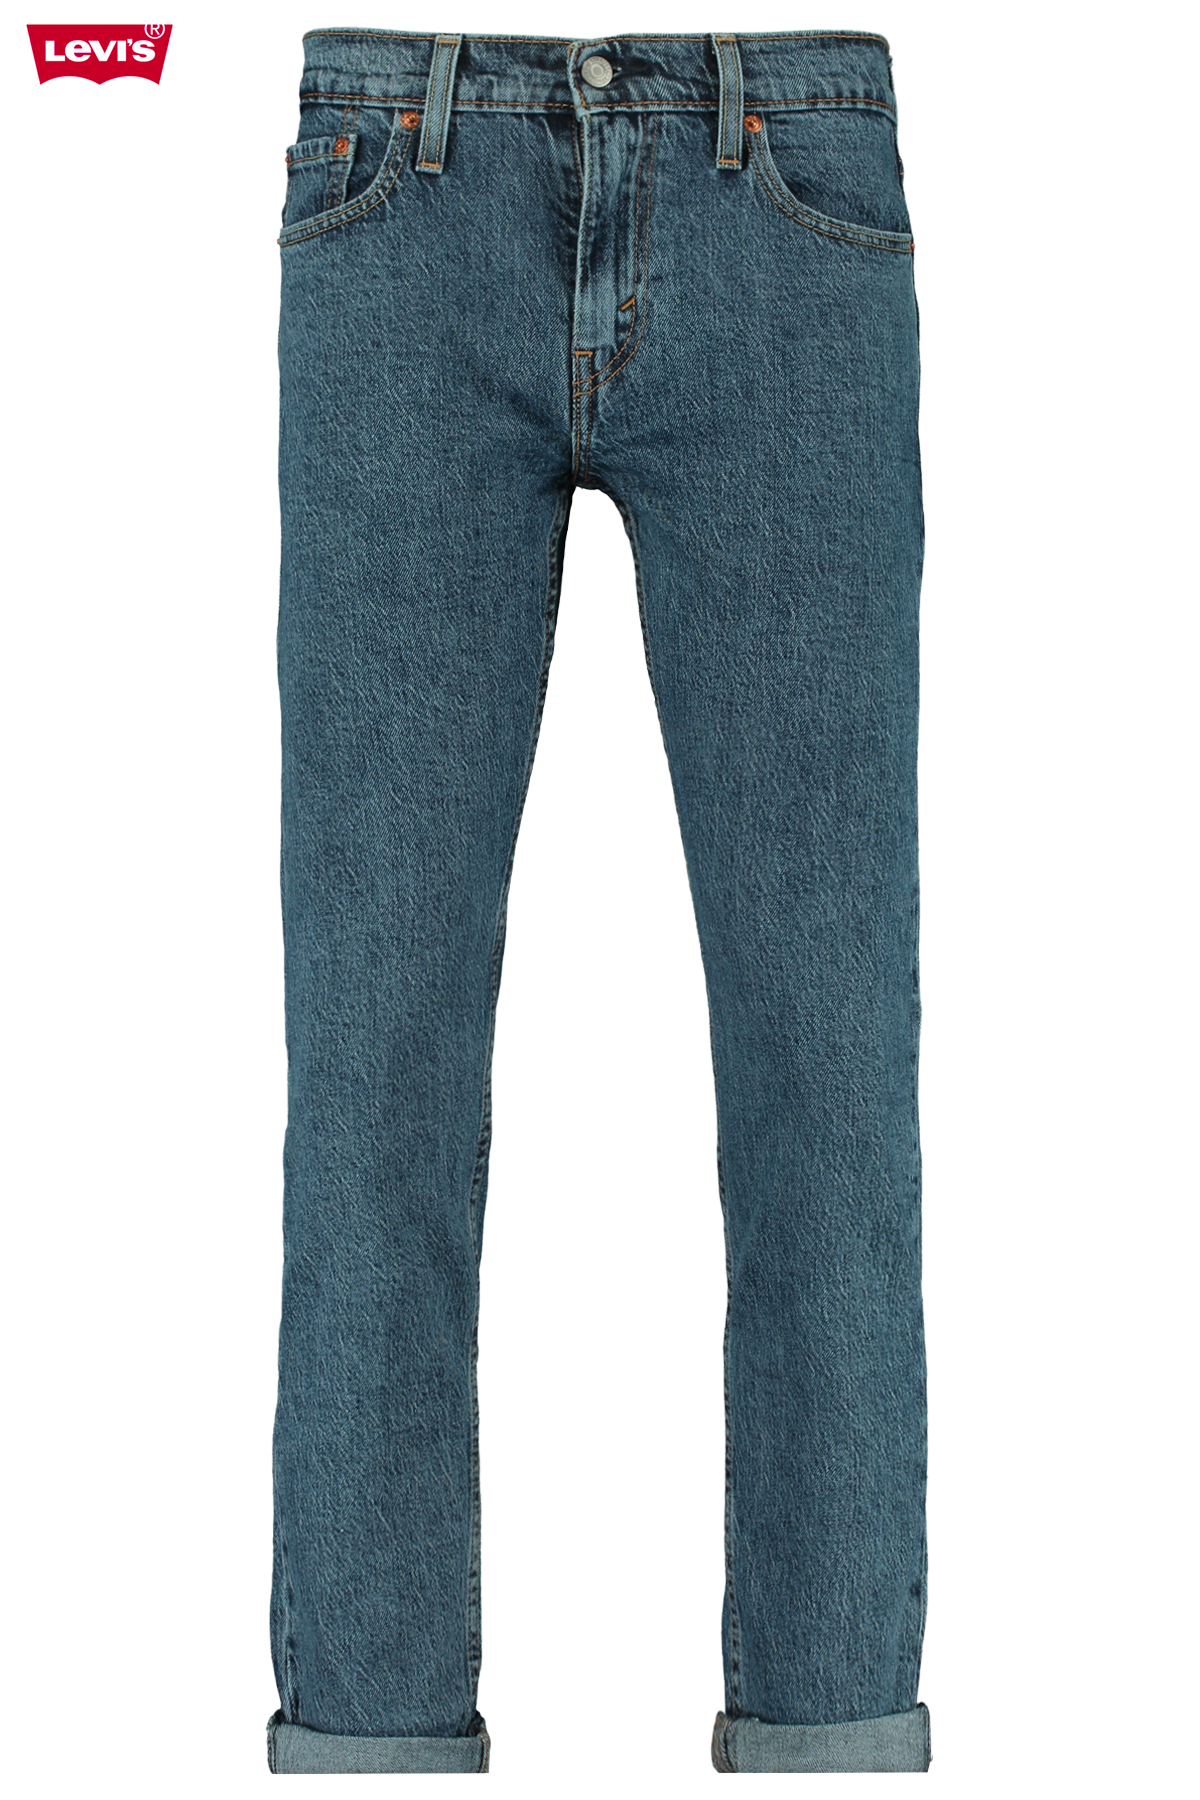 jeans 502 levis